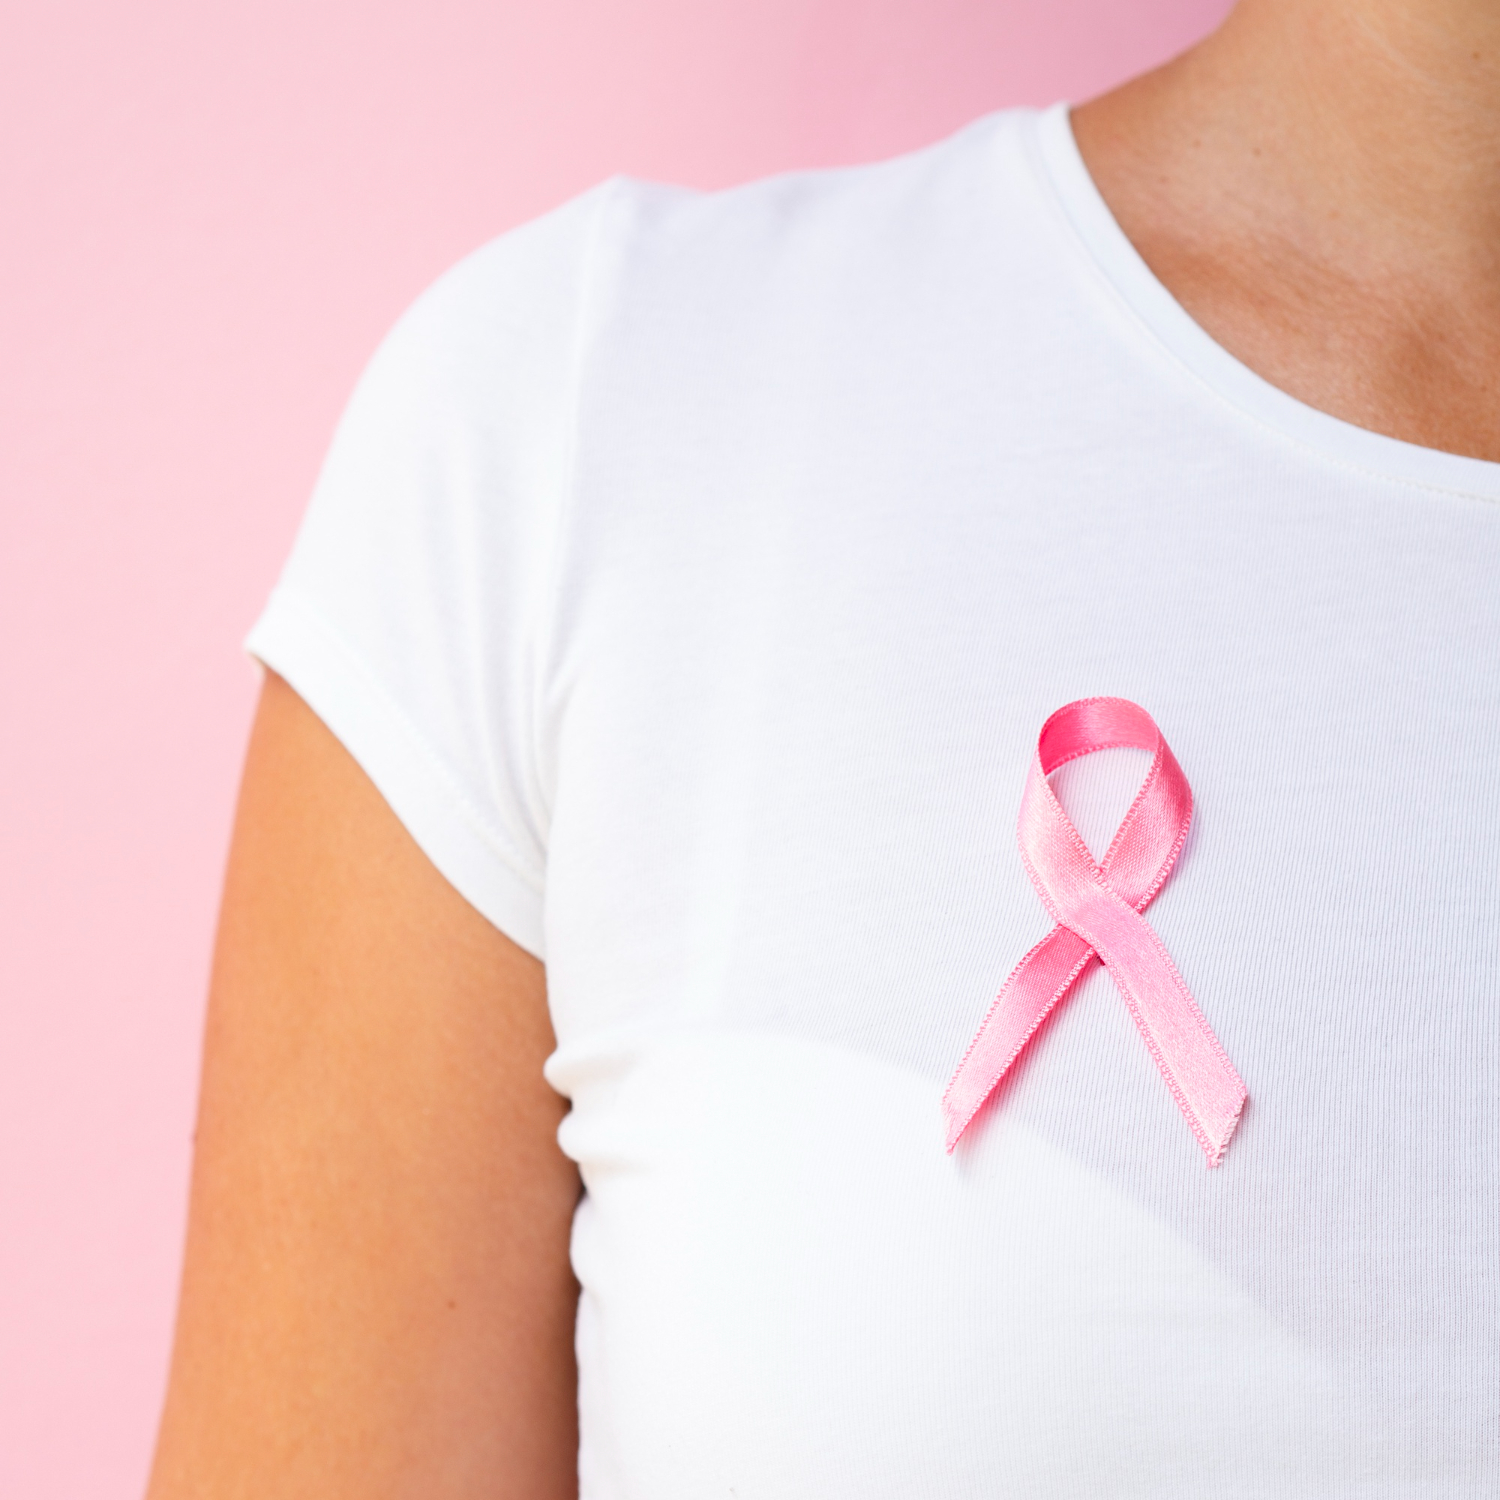 Especialista esclarece mitos e verdades sobre o câncer de mama